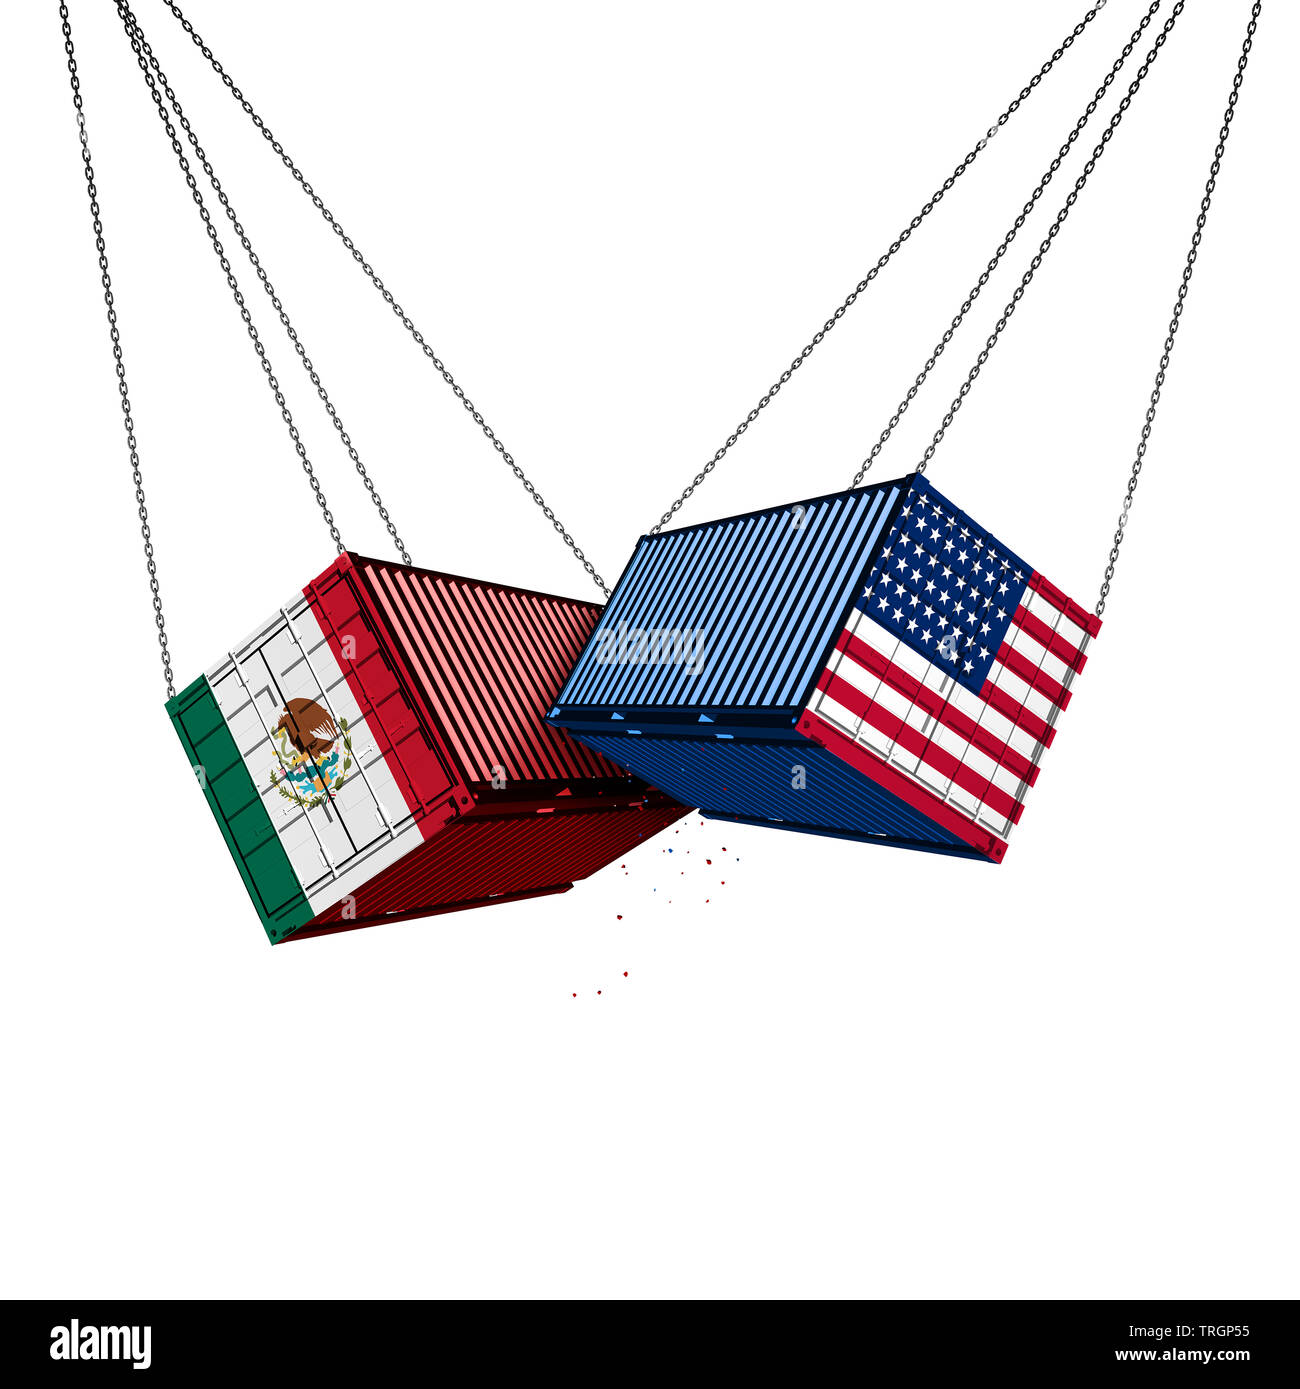 México US guerra comercial y los aranceles americanos como opuestas dos contenedores de carga en el conflicto como una disputa económica sobre los impuestos de importación y exportación. Foto de stock